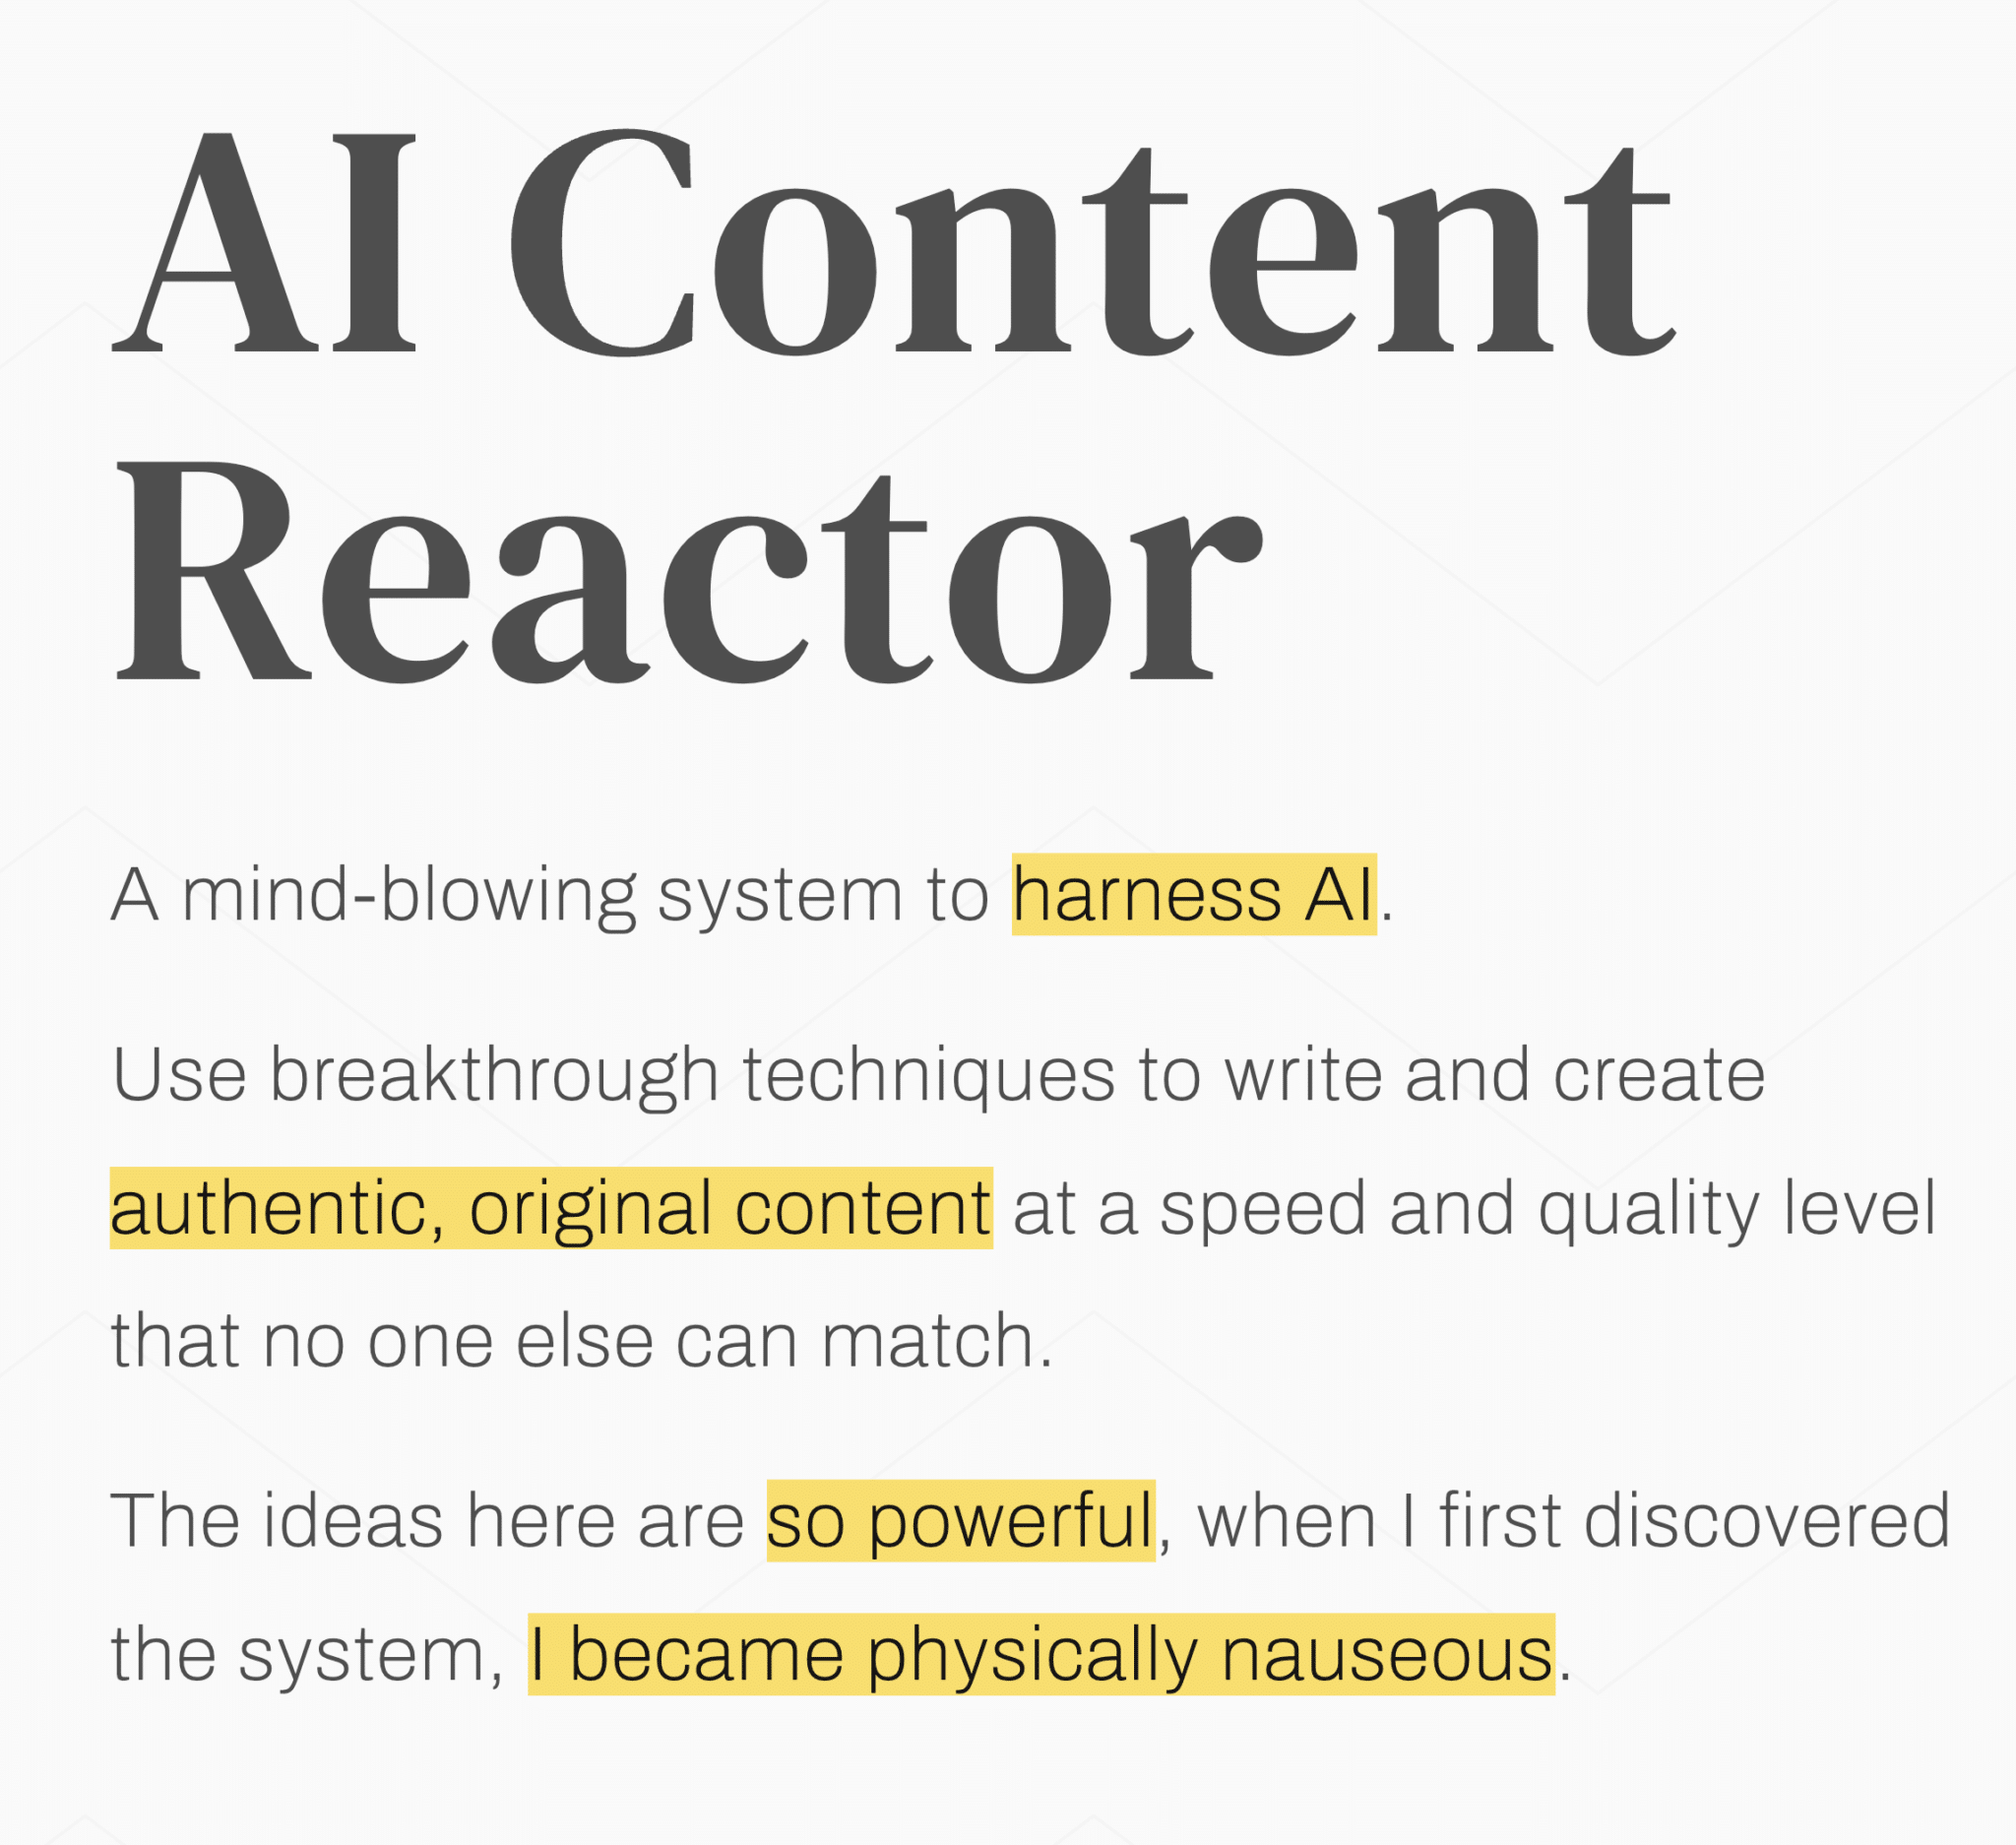 AI Content Reactor